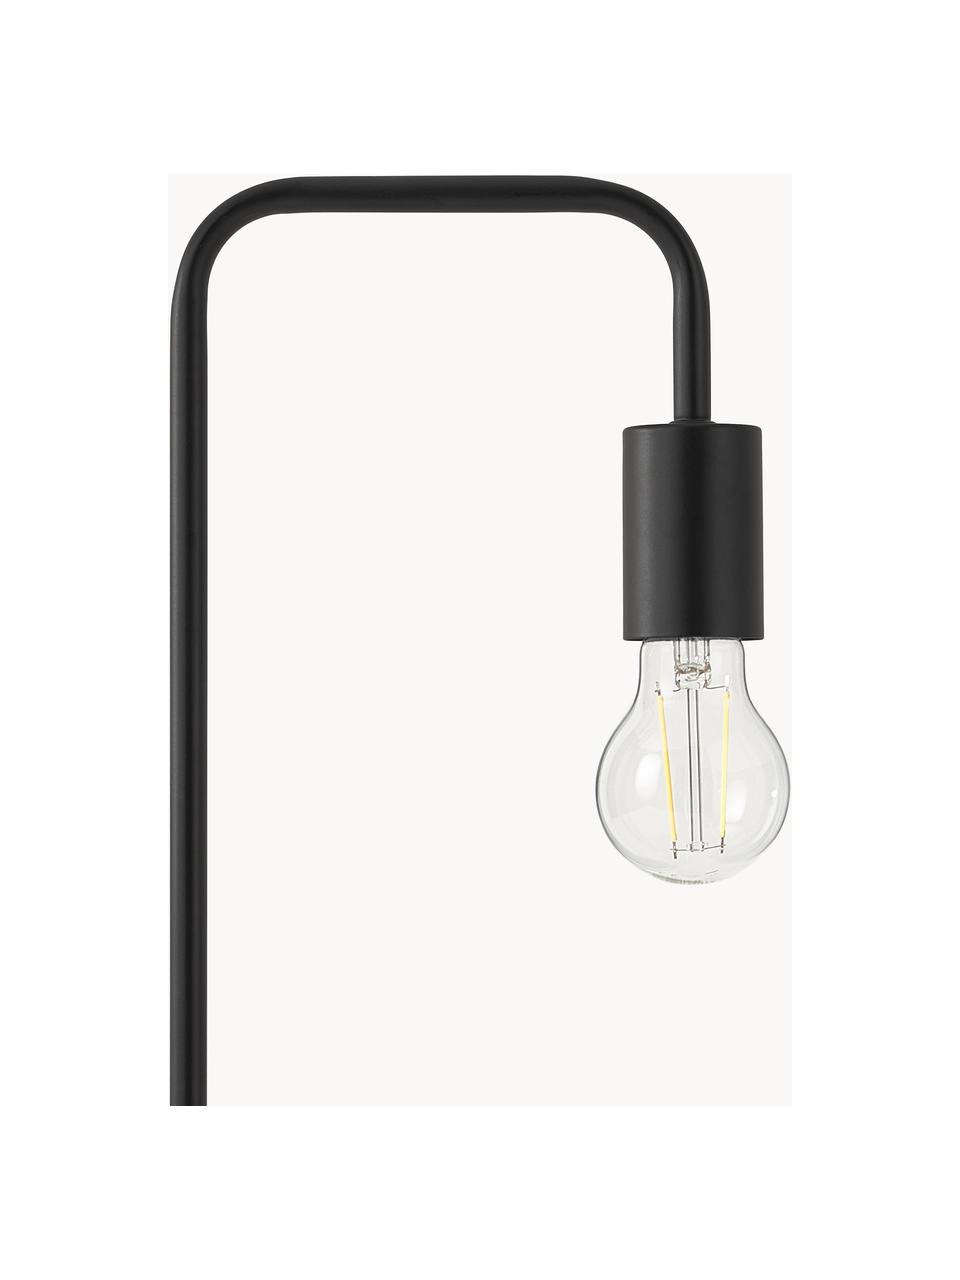 Lampa biurkowa z metalu Flow, Czarny, S 18 x W 57 cm